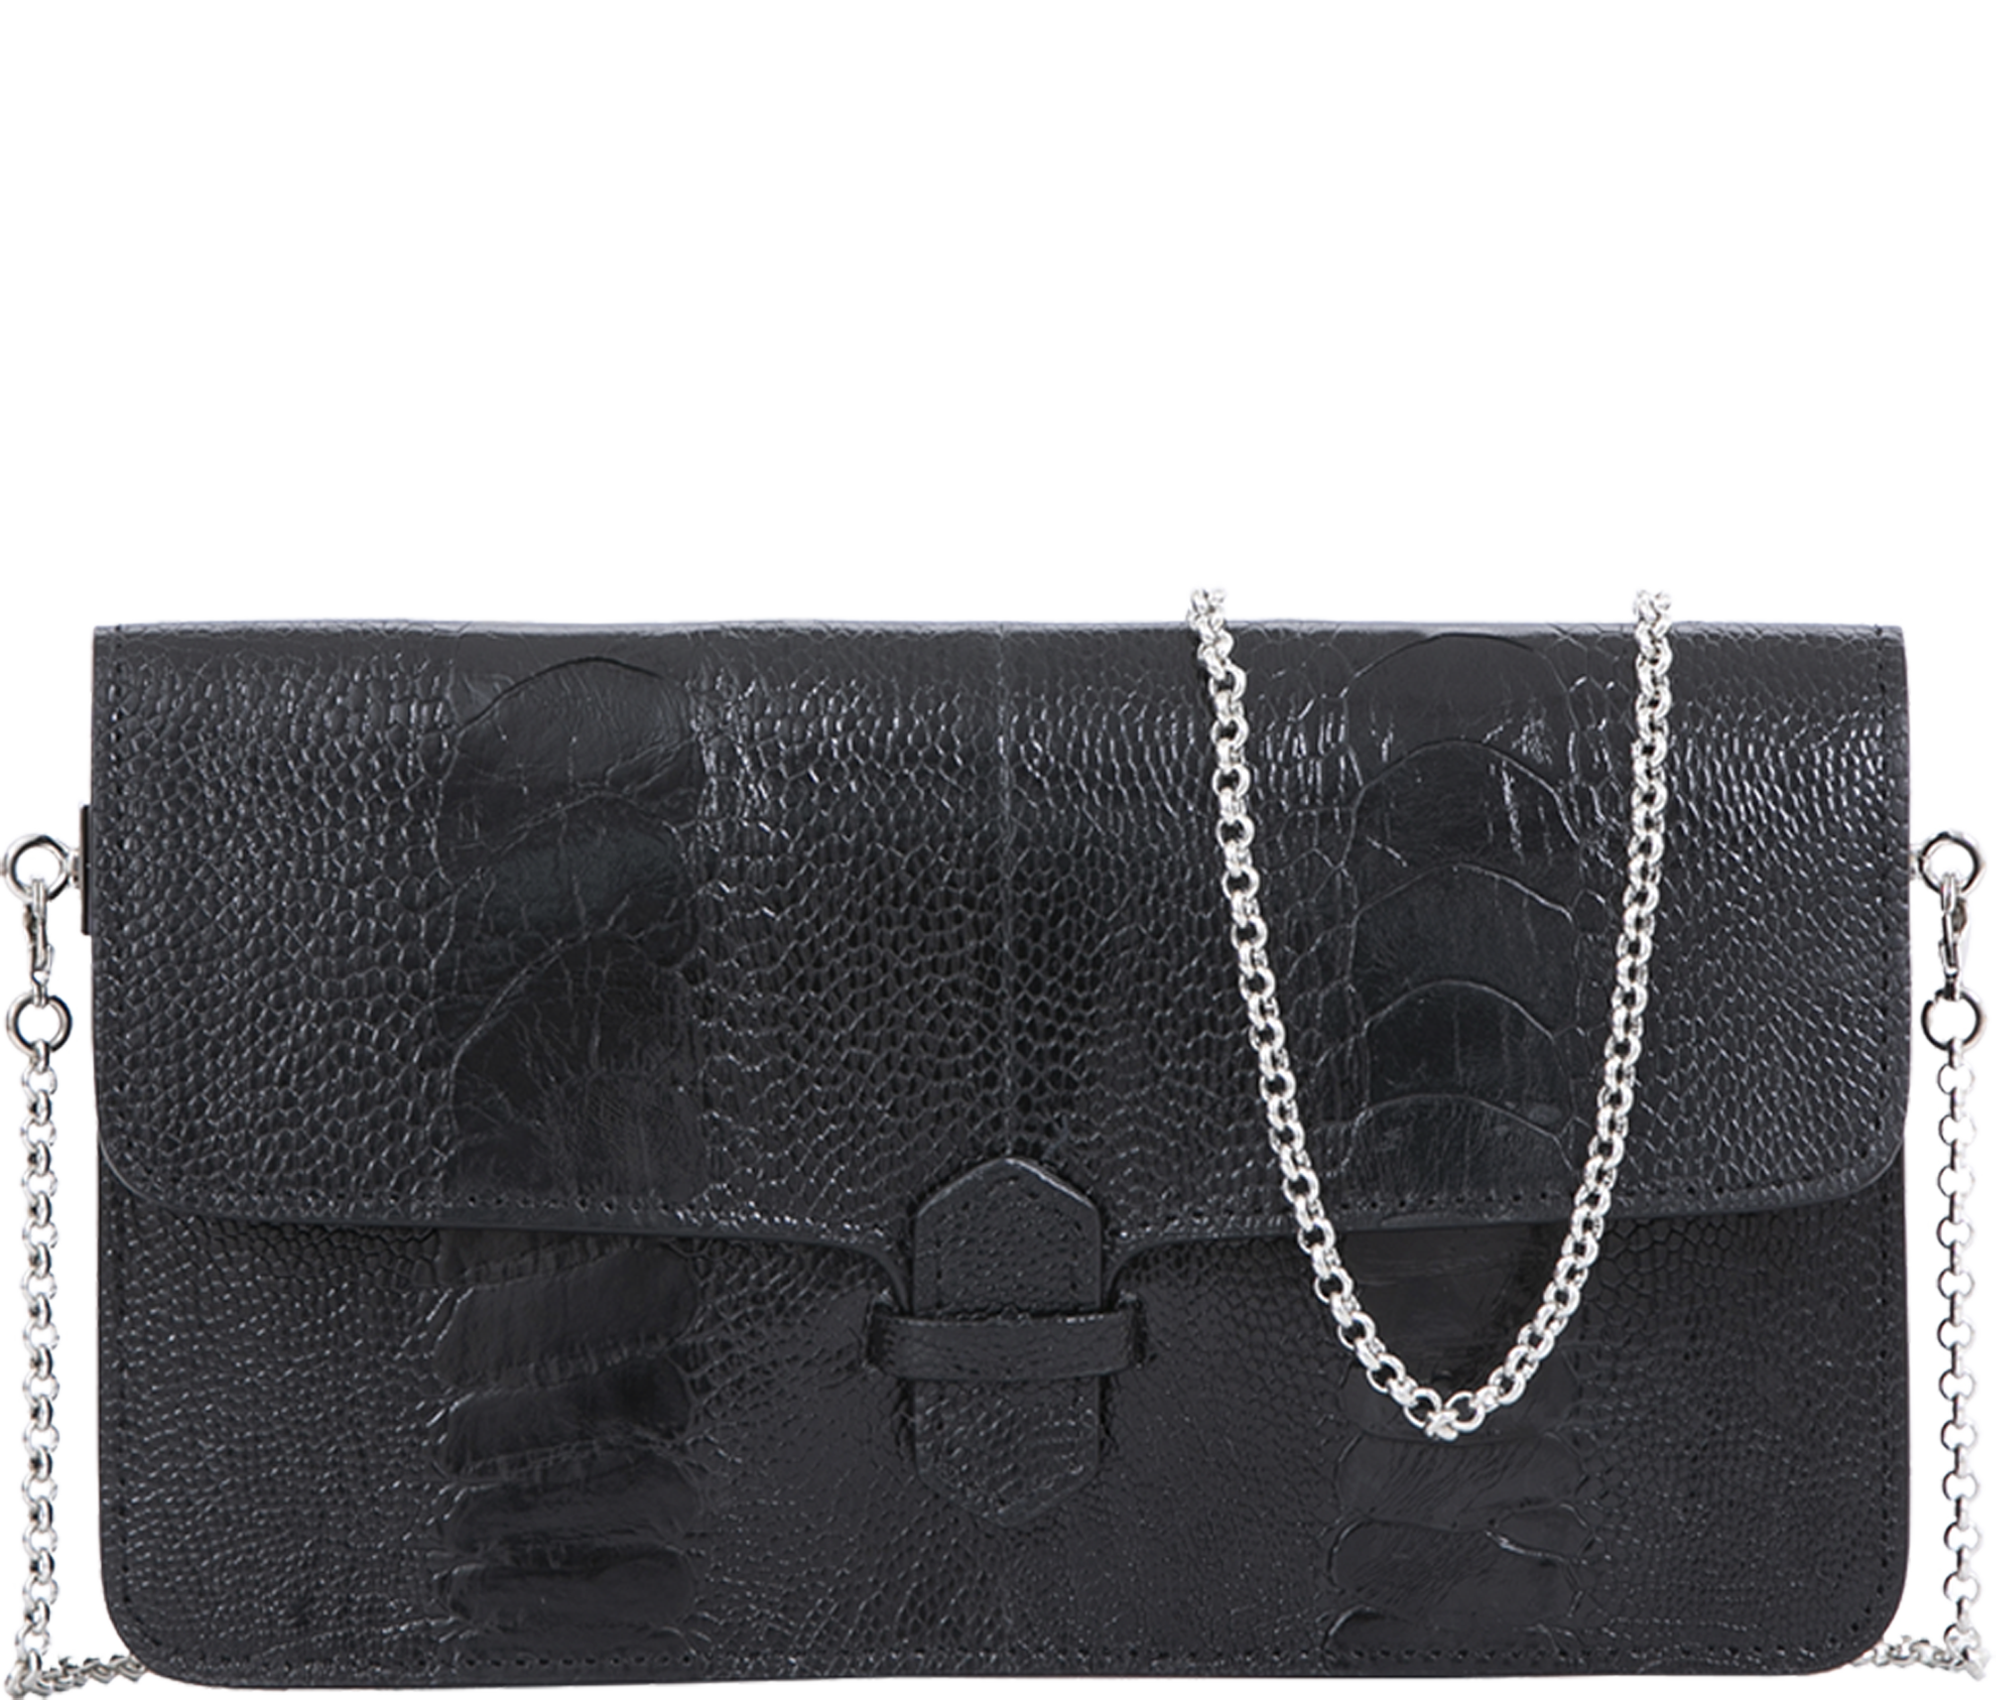 Handbag Black Ostrich Shin Wallet Crossbody Bag